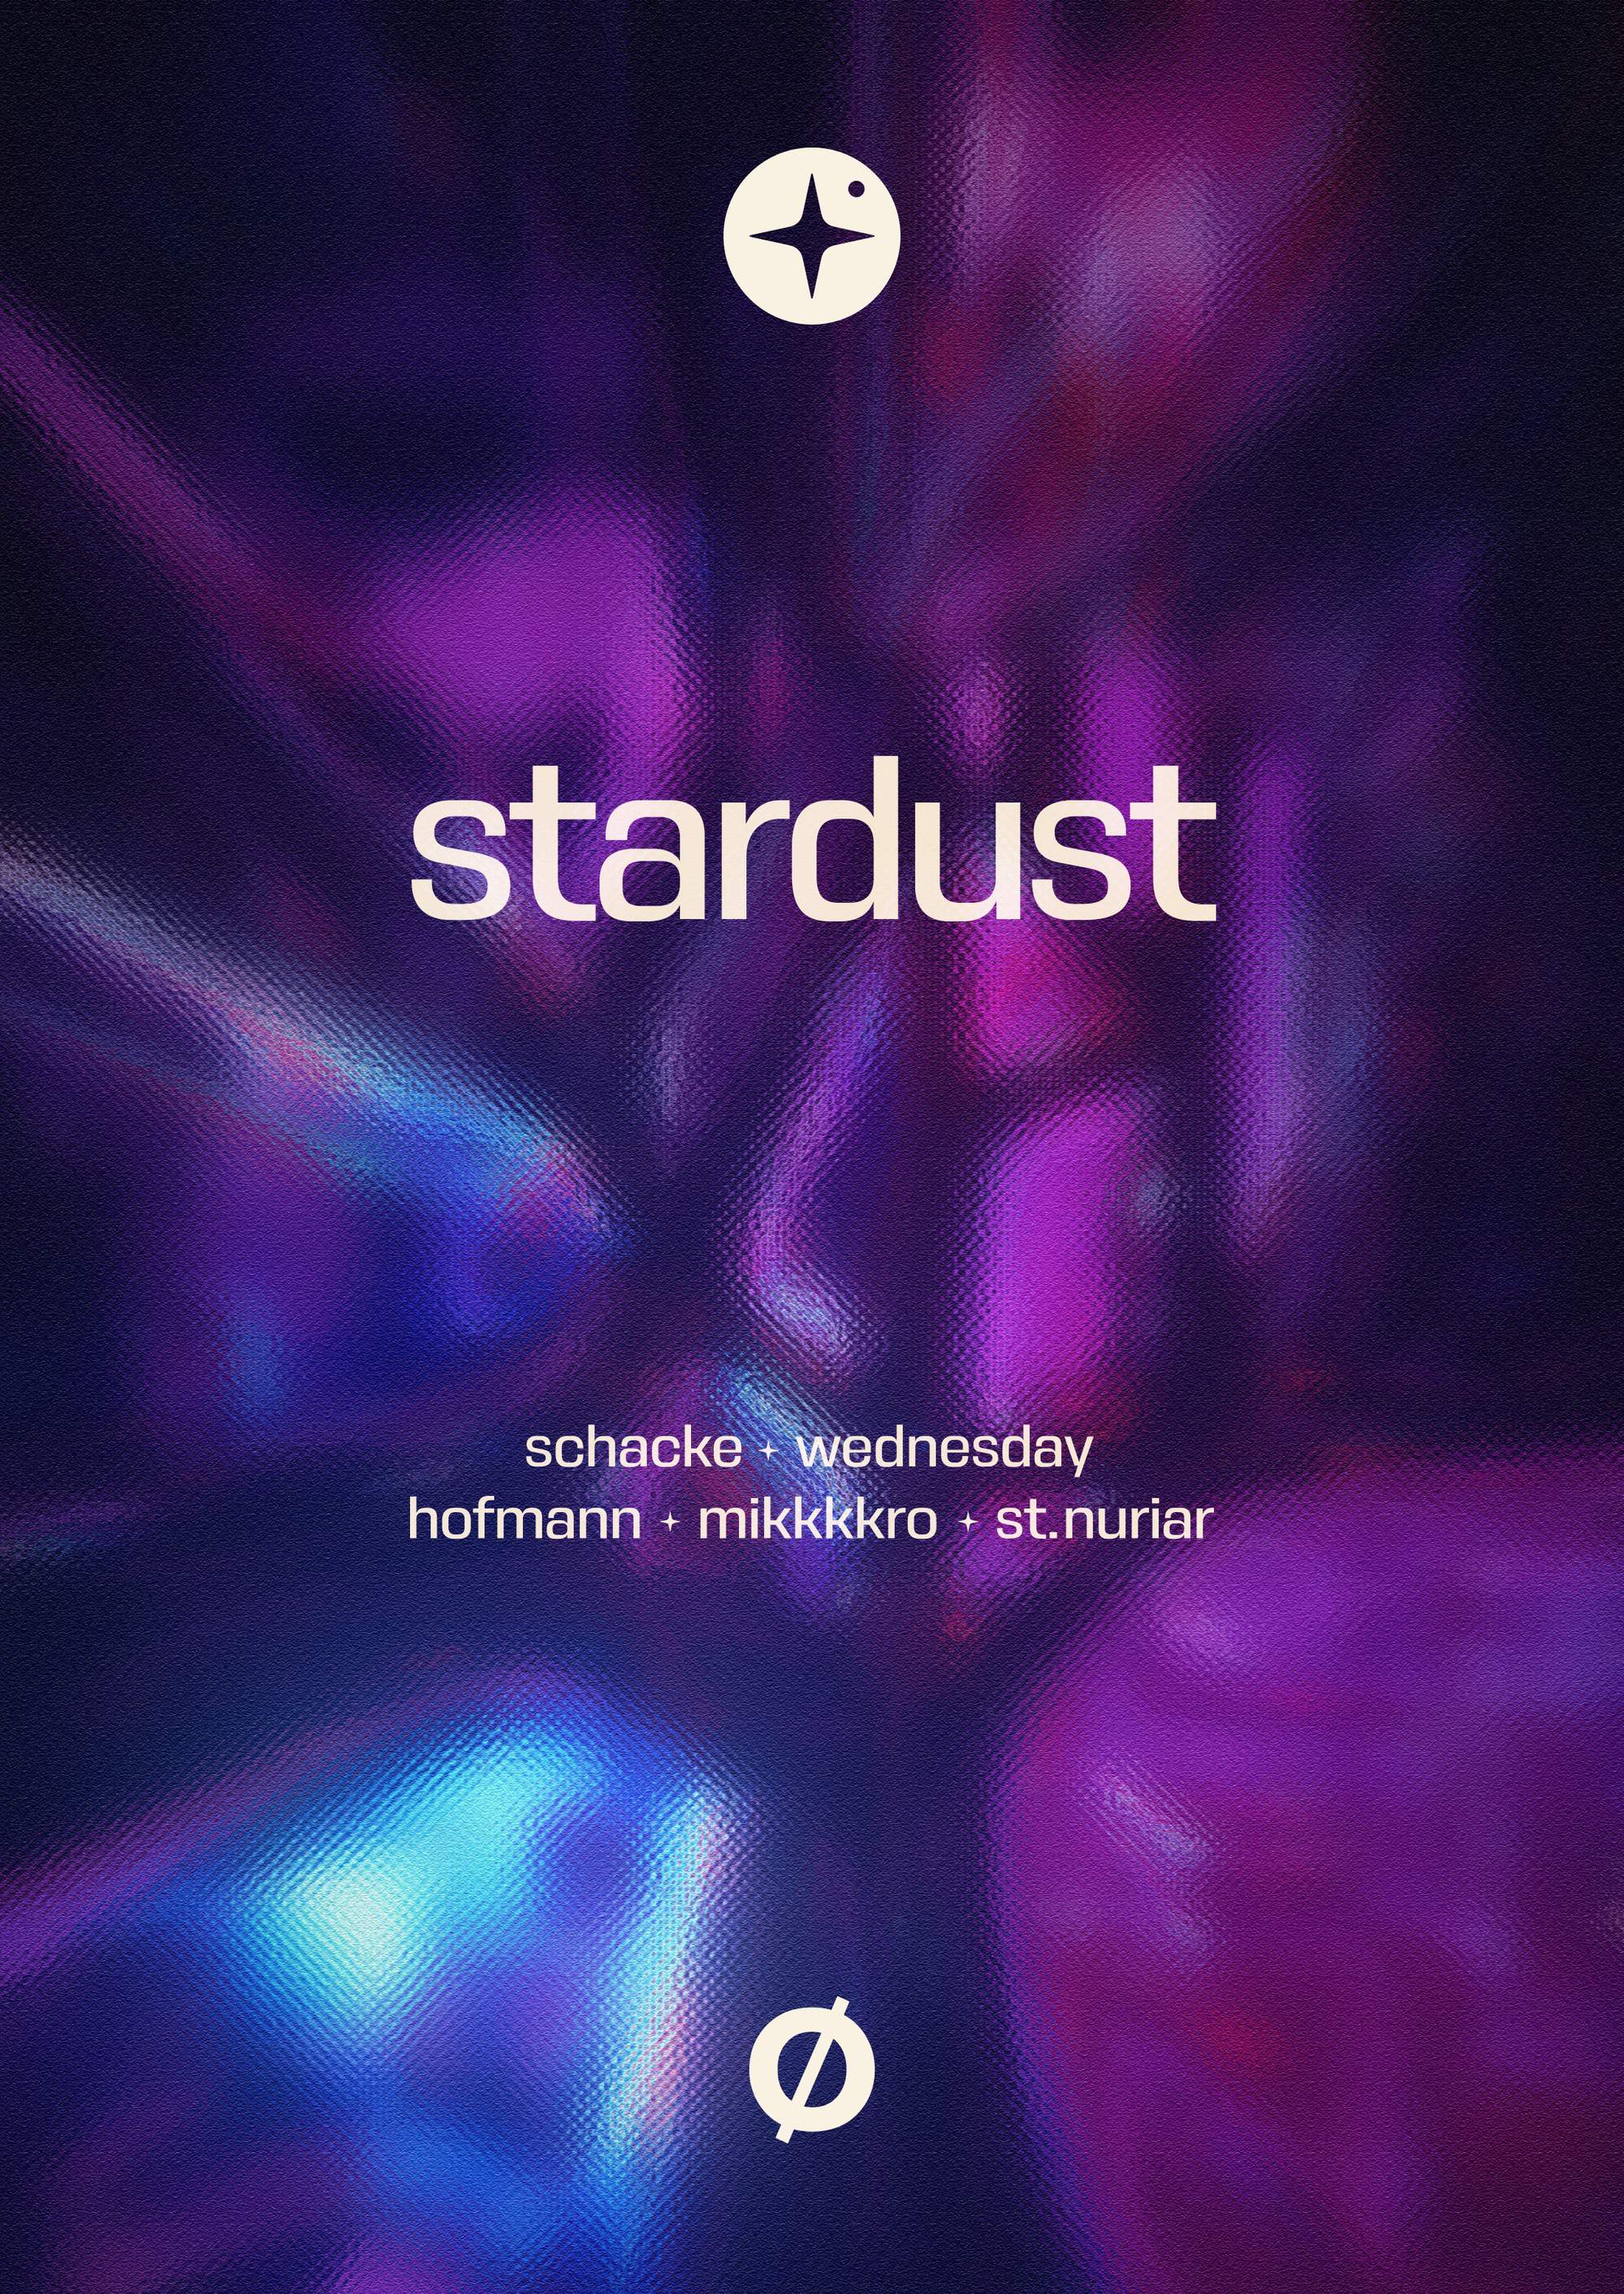 stardust: Schacke, Wednesday, hofmann, mikkkkro, st. nuriar - フライヤー表